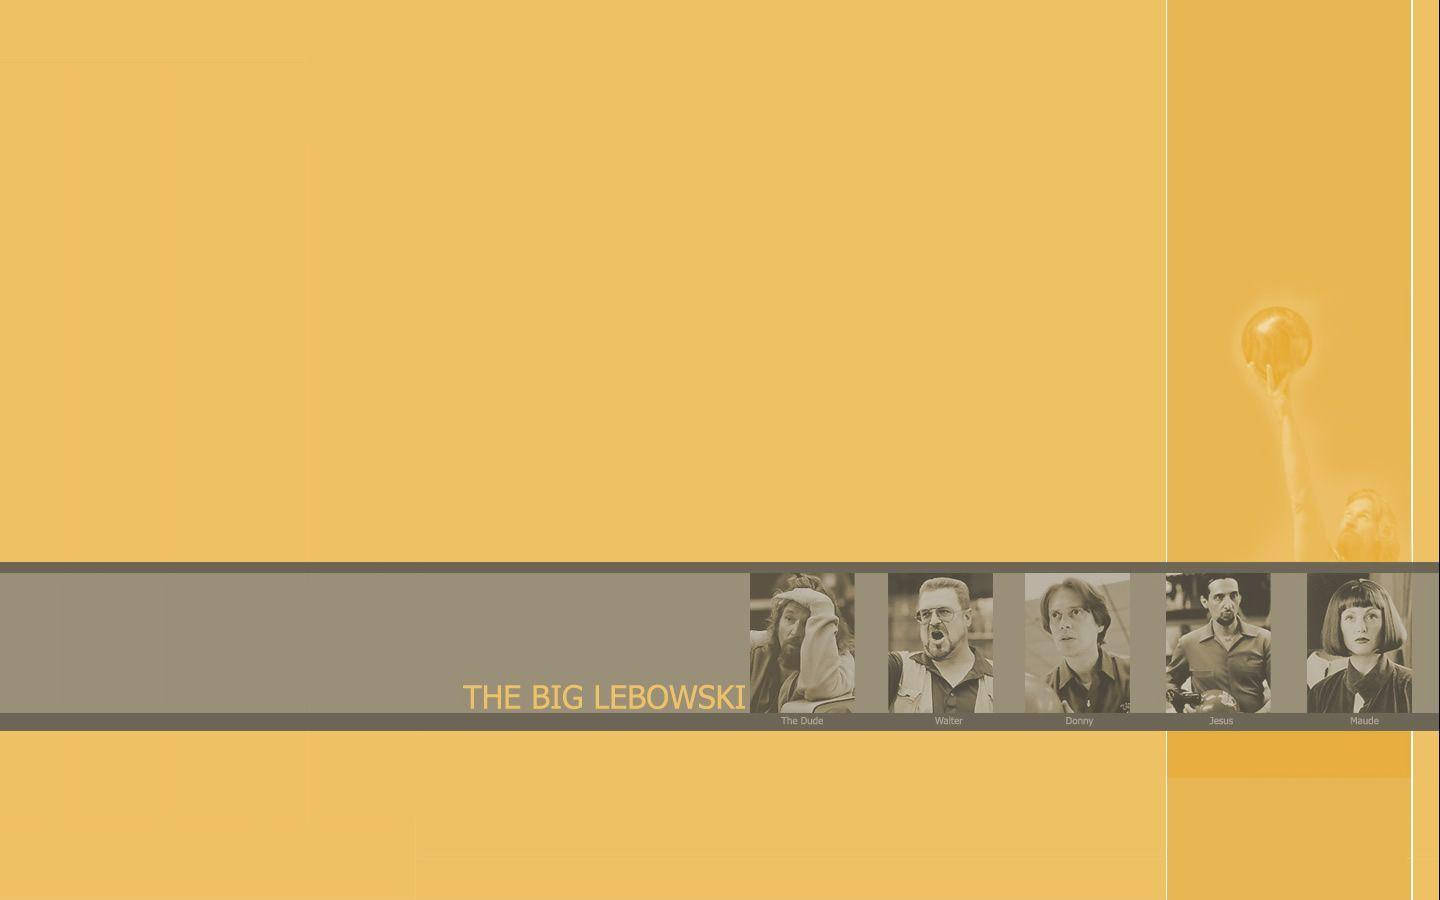 The Big Lebowski 1998 Film Roll Digital Art Background